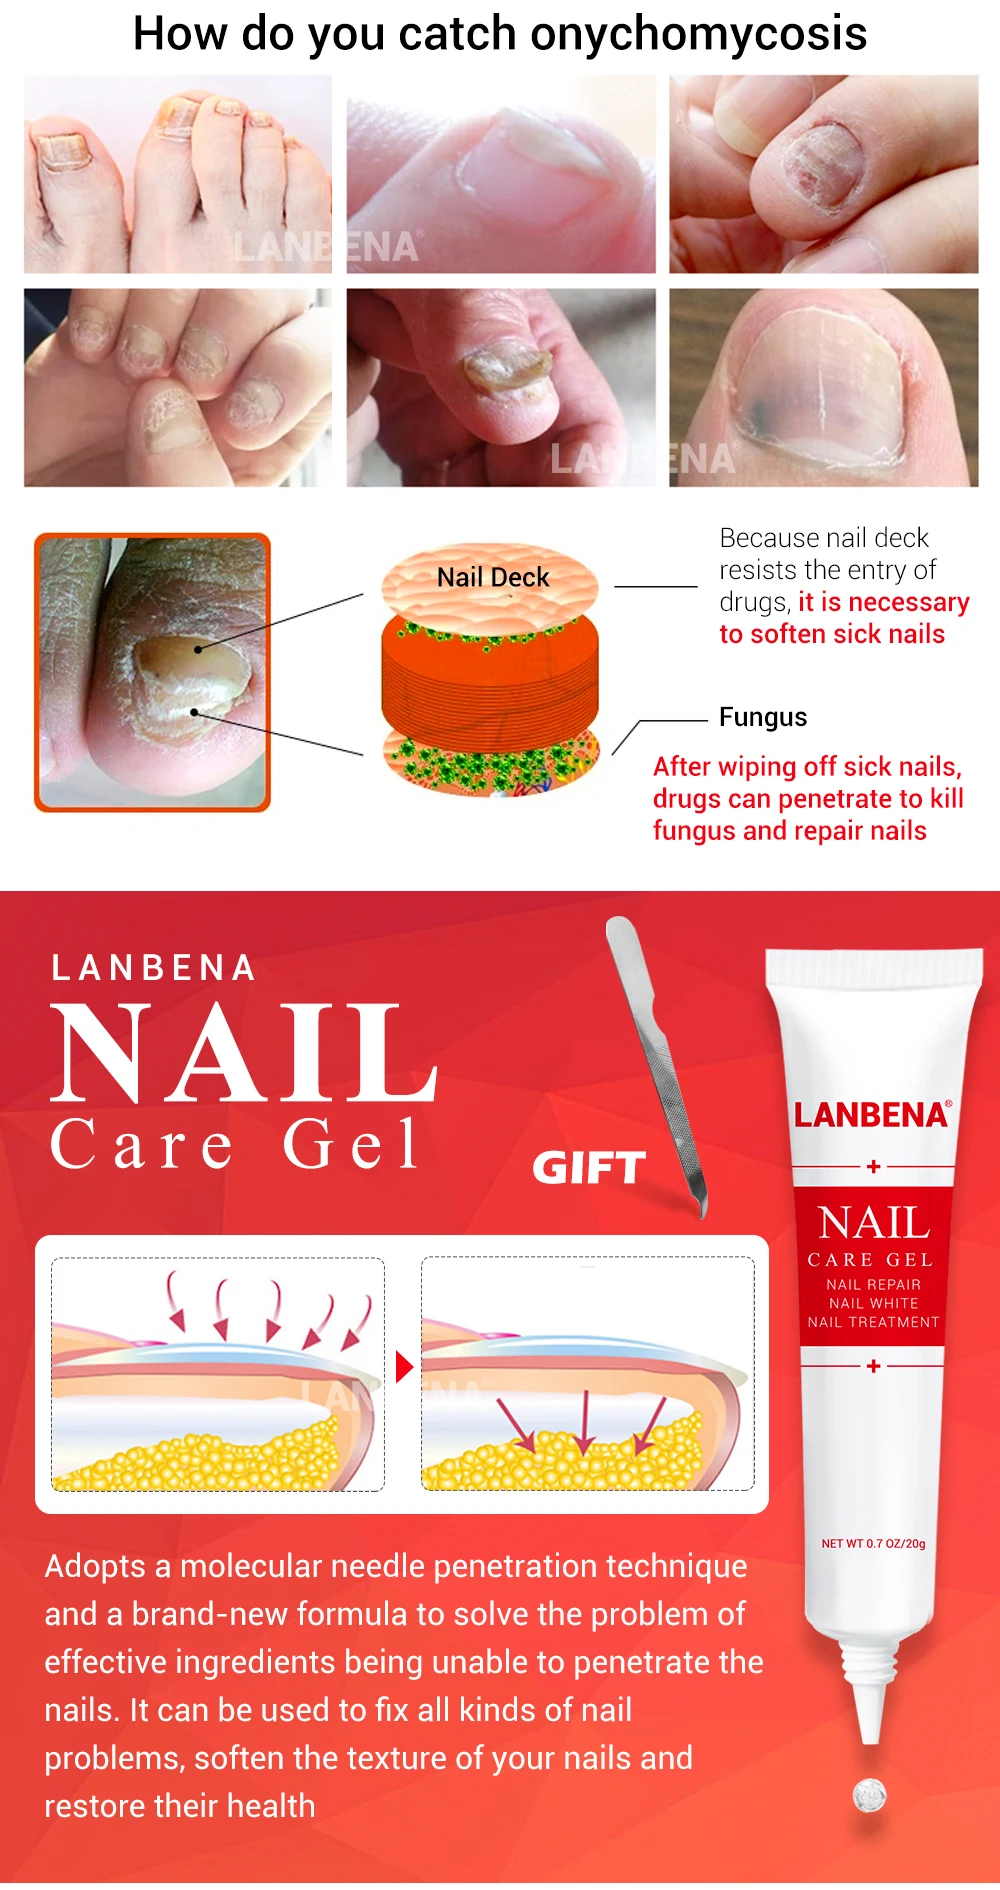 LANBENA гель для ухода за ногтями+ восстанавливающая эссенция для ногтей, сыворотка для лечения Ногтей, удаление онихомикоза, Питательный Уход за ногтями для рук и ног, 2 шт